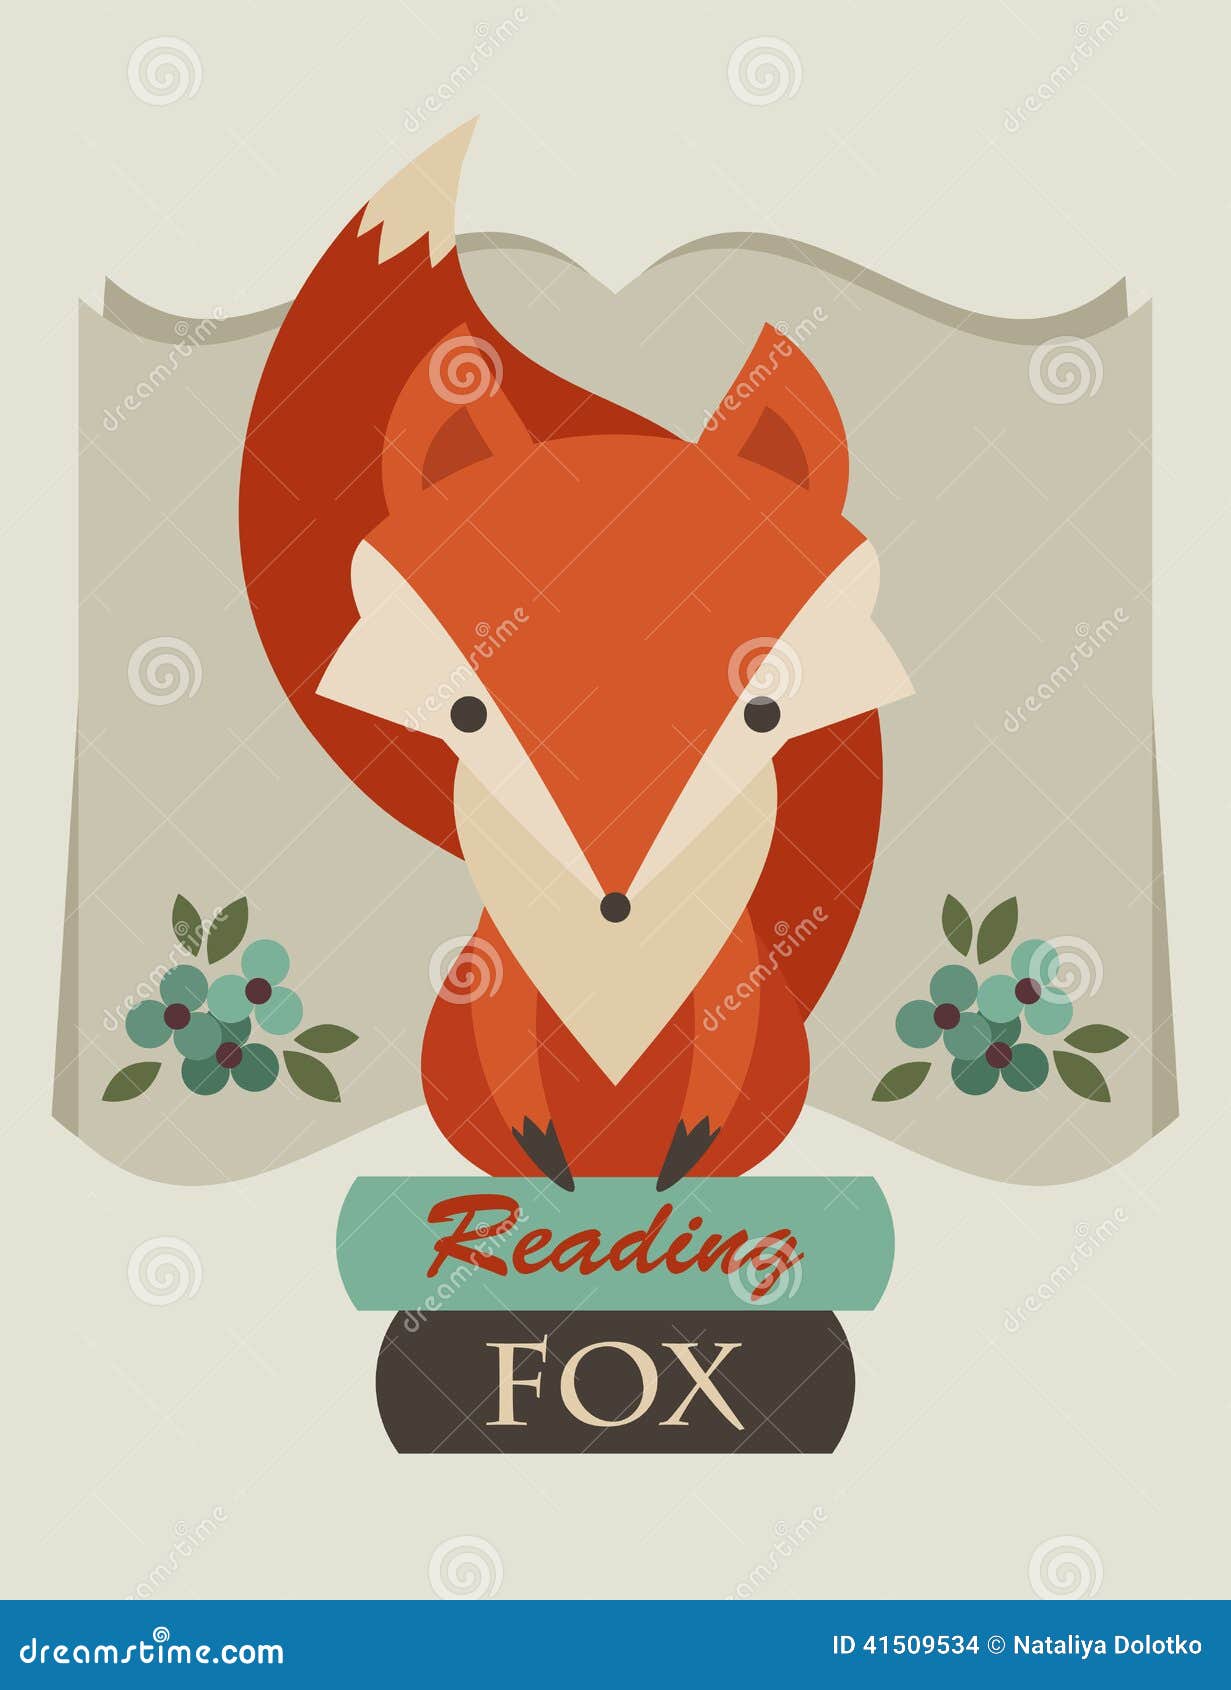 Read foxes. Лиса эмблема. Лиса с книгой вектор. Reading Fox. Лиса сидит на книге.